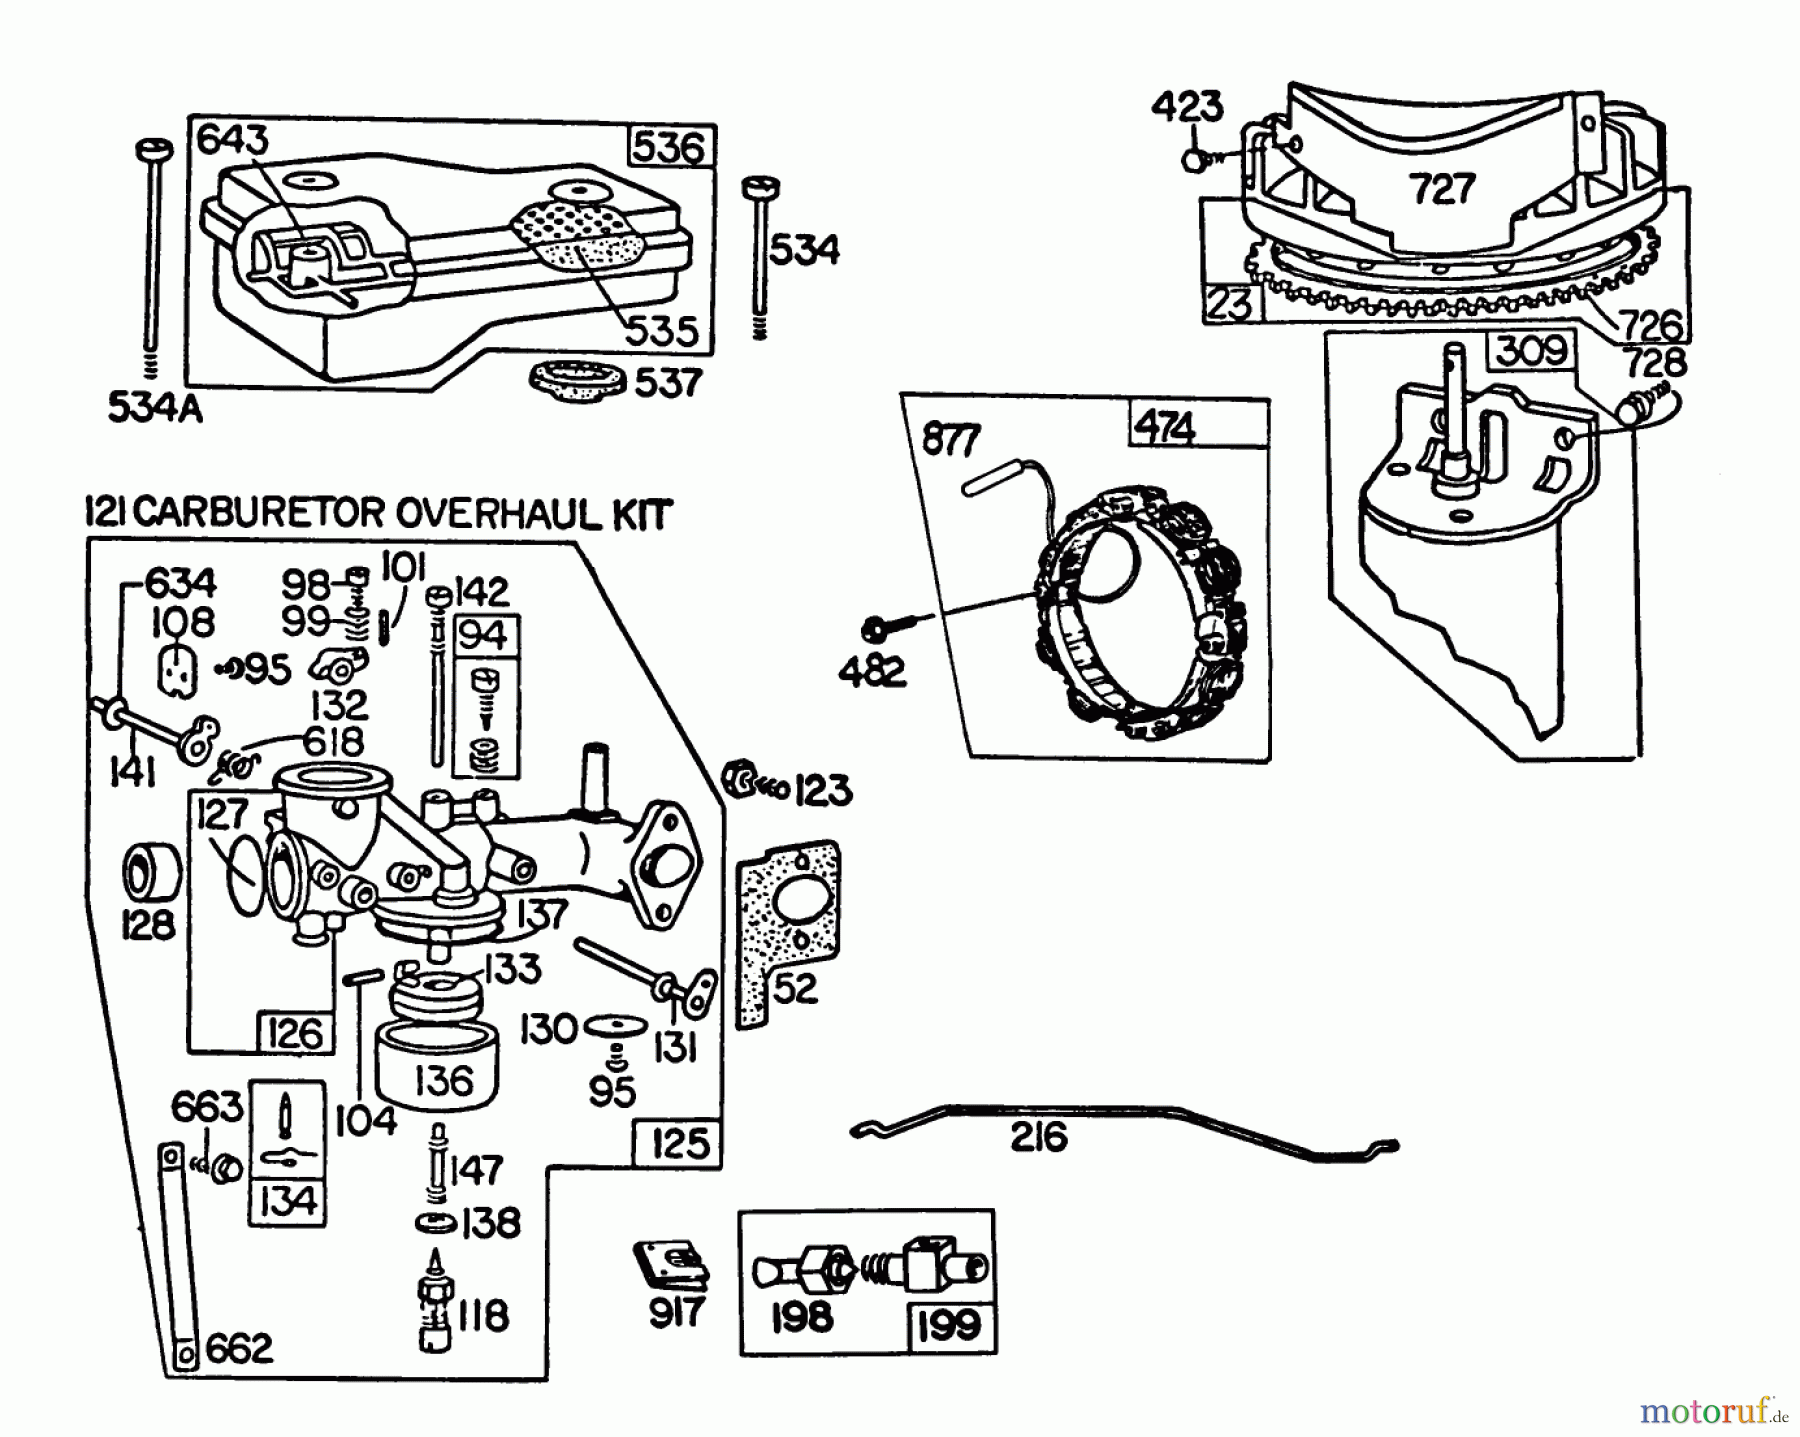  Toro Neu Accessories, Mower 59155 - Toro Mulcher Kit, 32